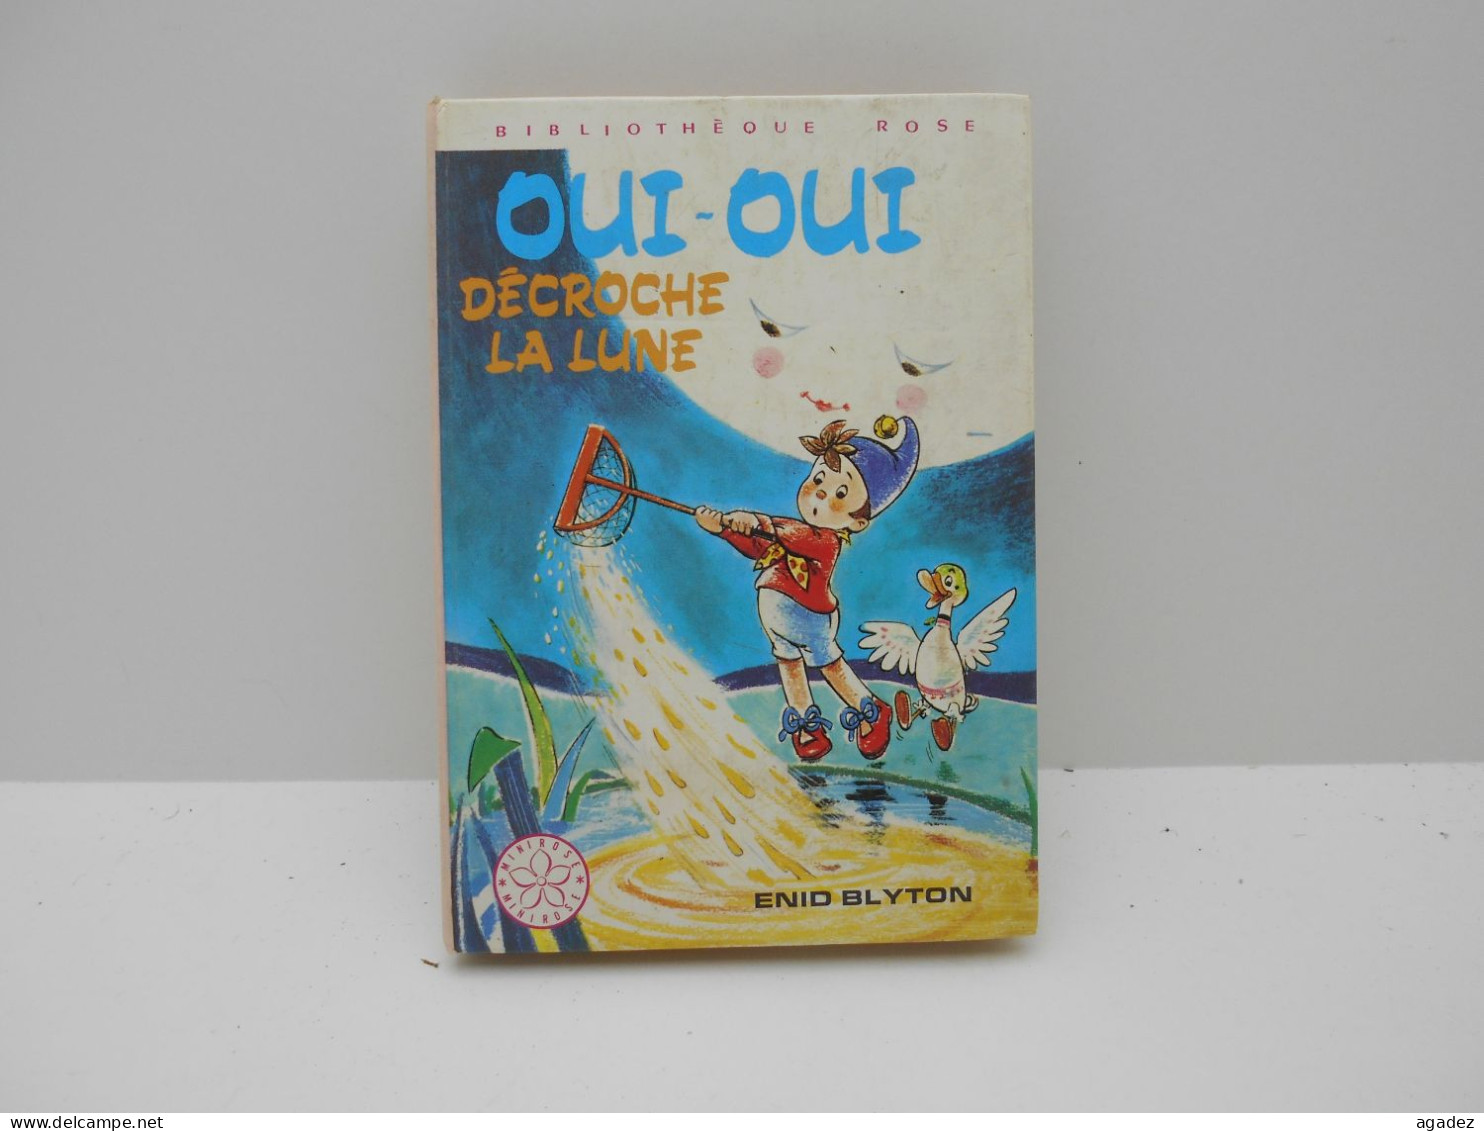 Livre Jeunesse Oui Oui Decroche La Lune 1977 - Bibliotheque Rose